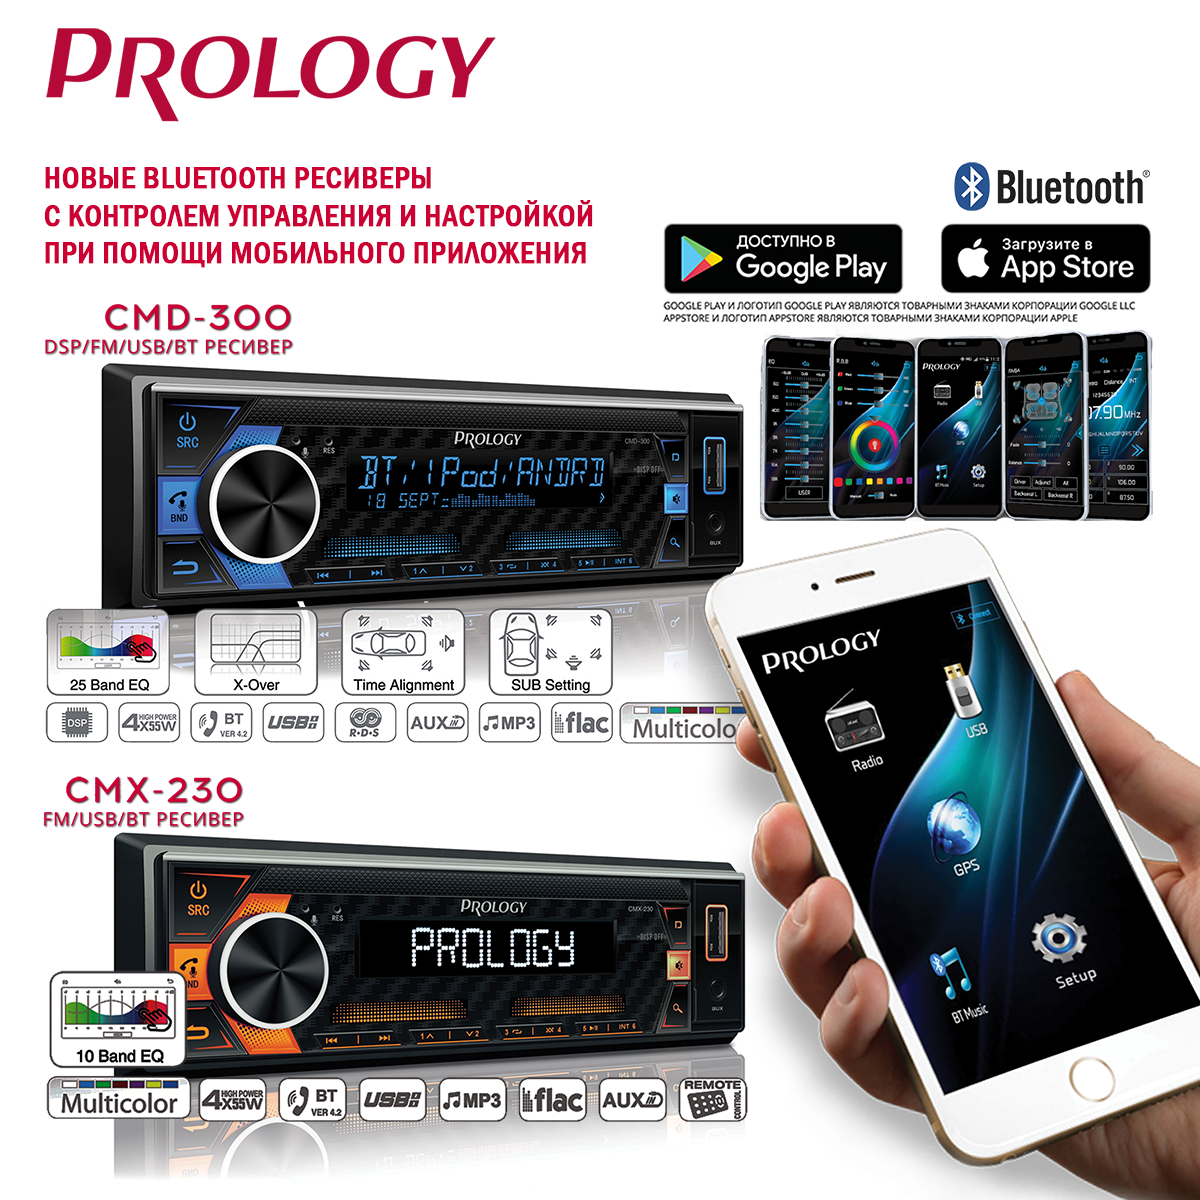 Новые Bluetooth ресиверы PROLOGY с контролем управления и настройкой при помощи мобильного приложения.PROLOGY CMD-300 и CMX-230 уже в Продаже!